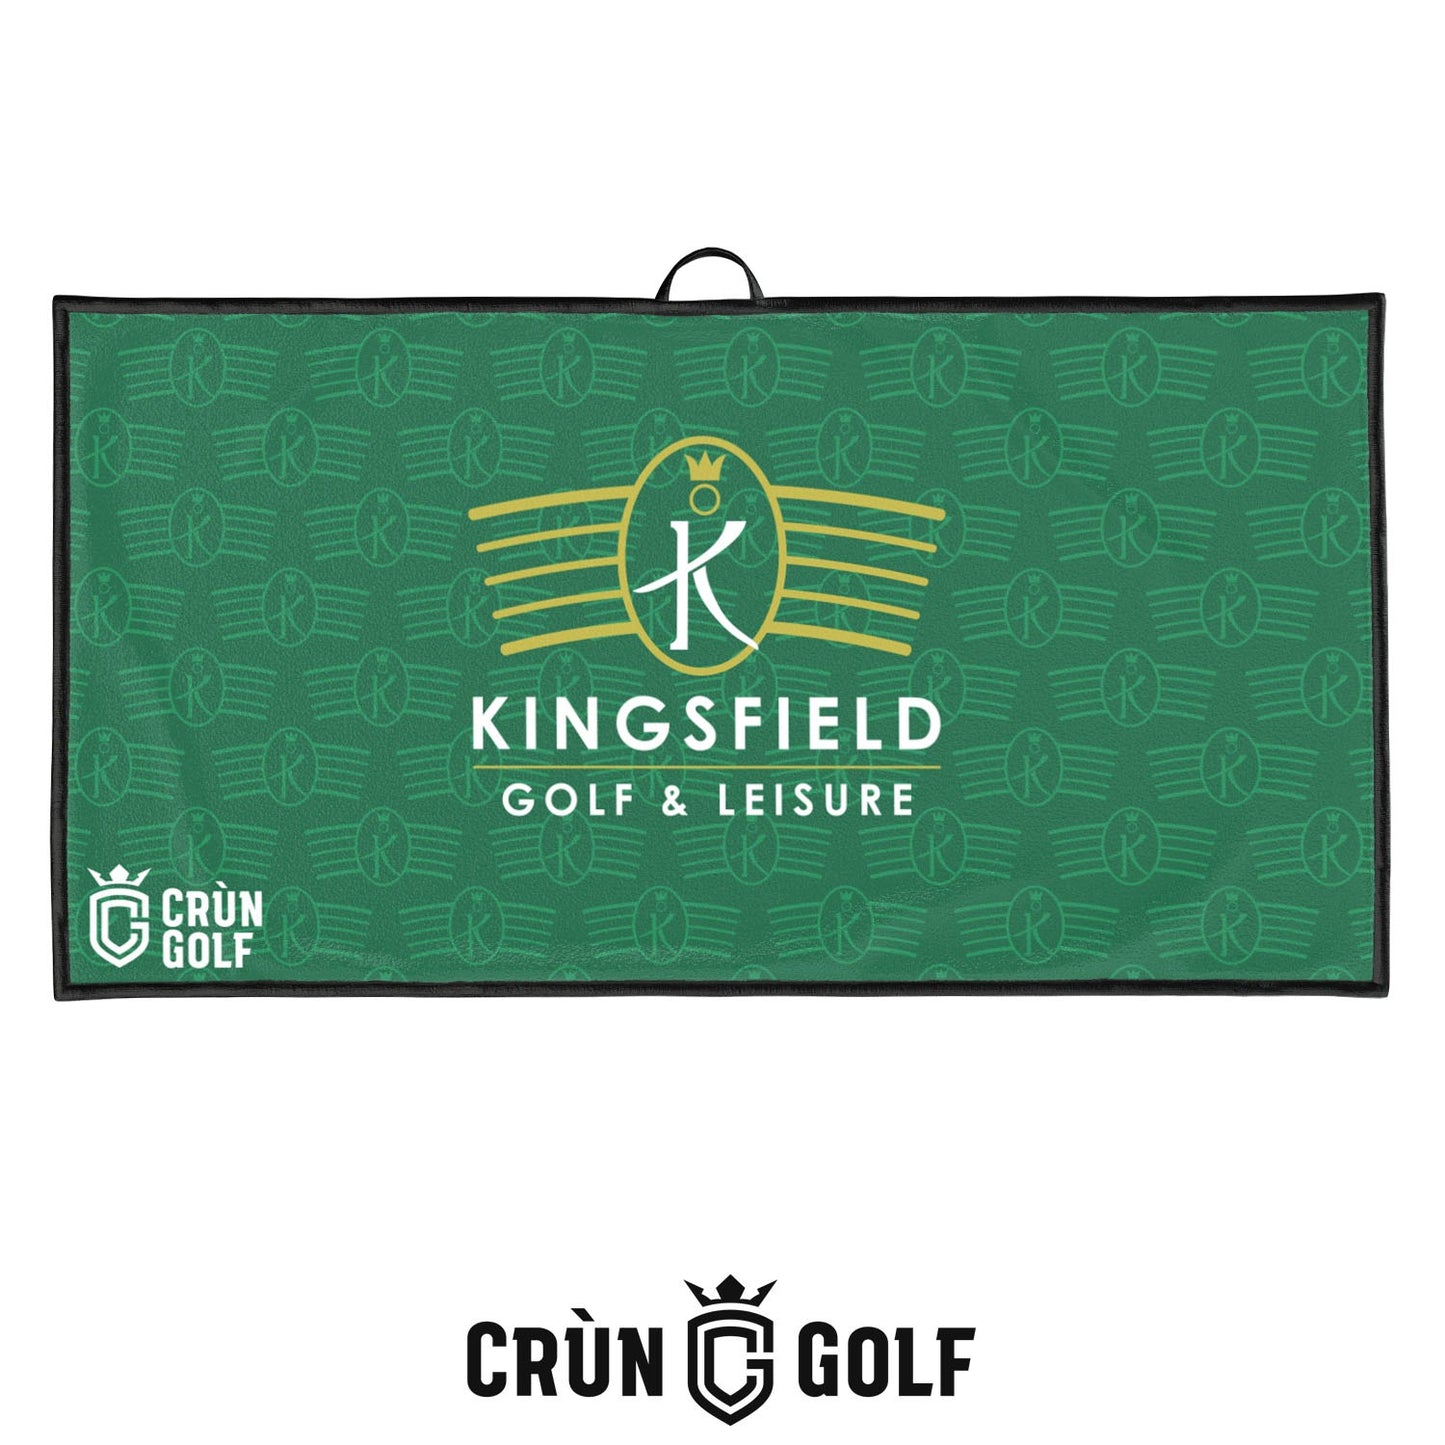 Kingsfield Two Tone Towel - Green